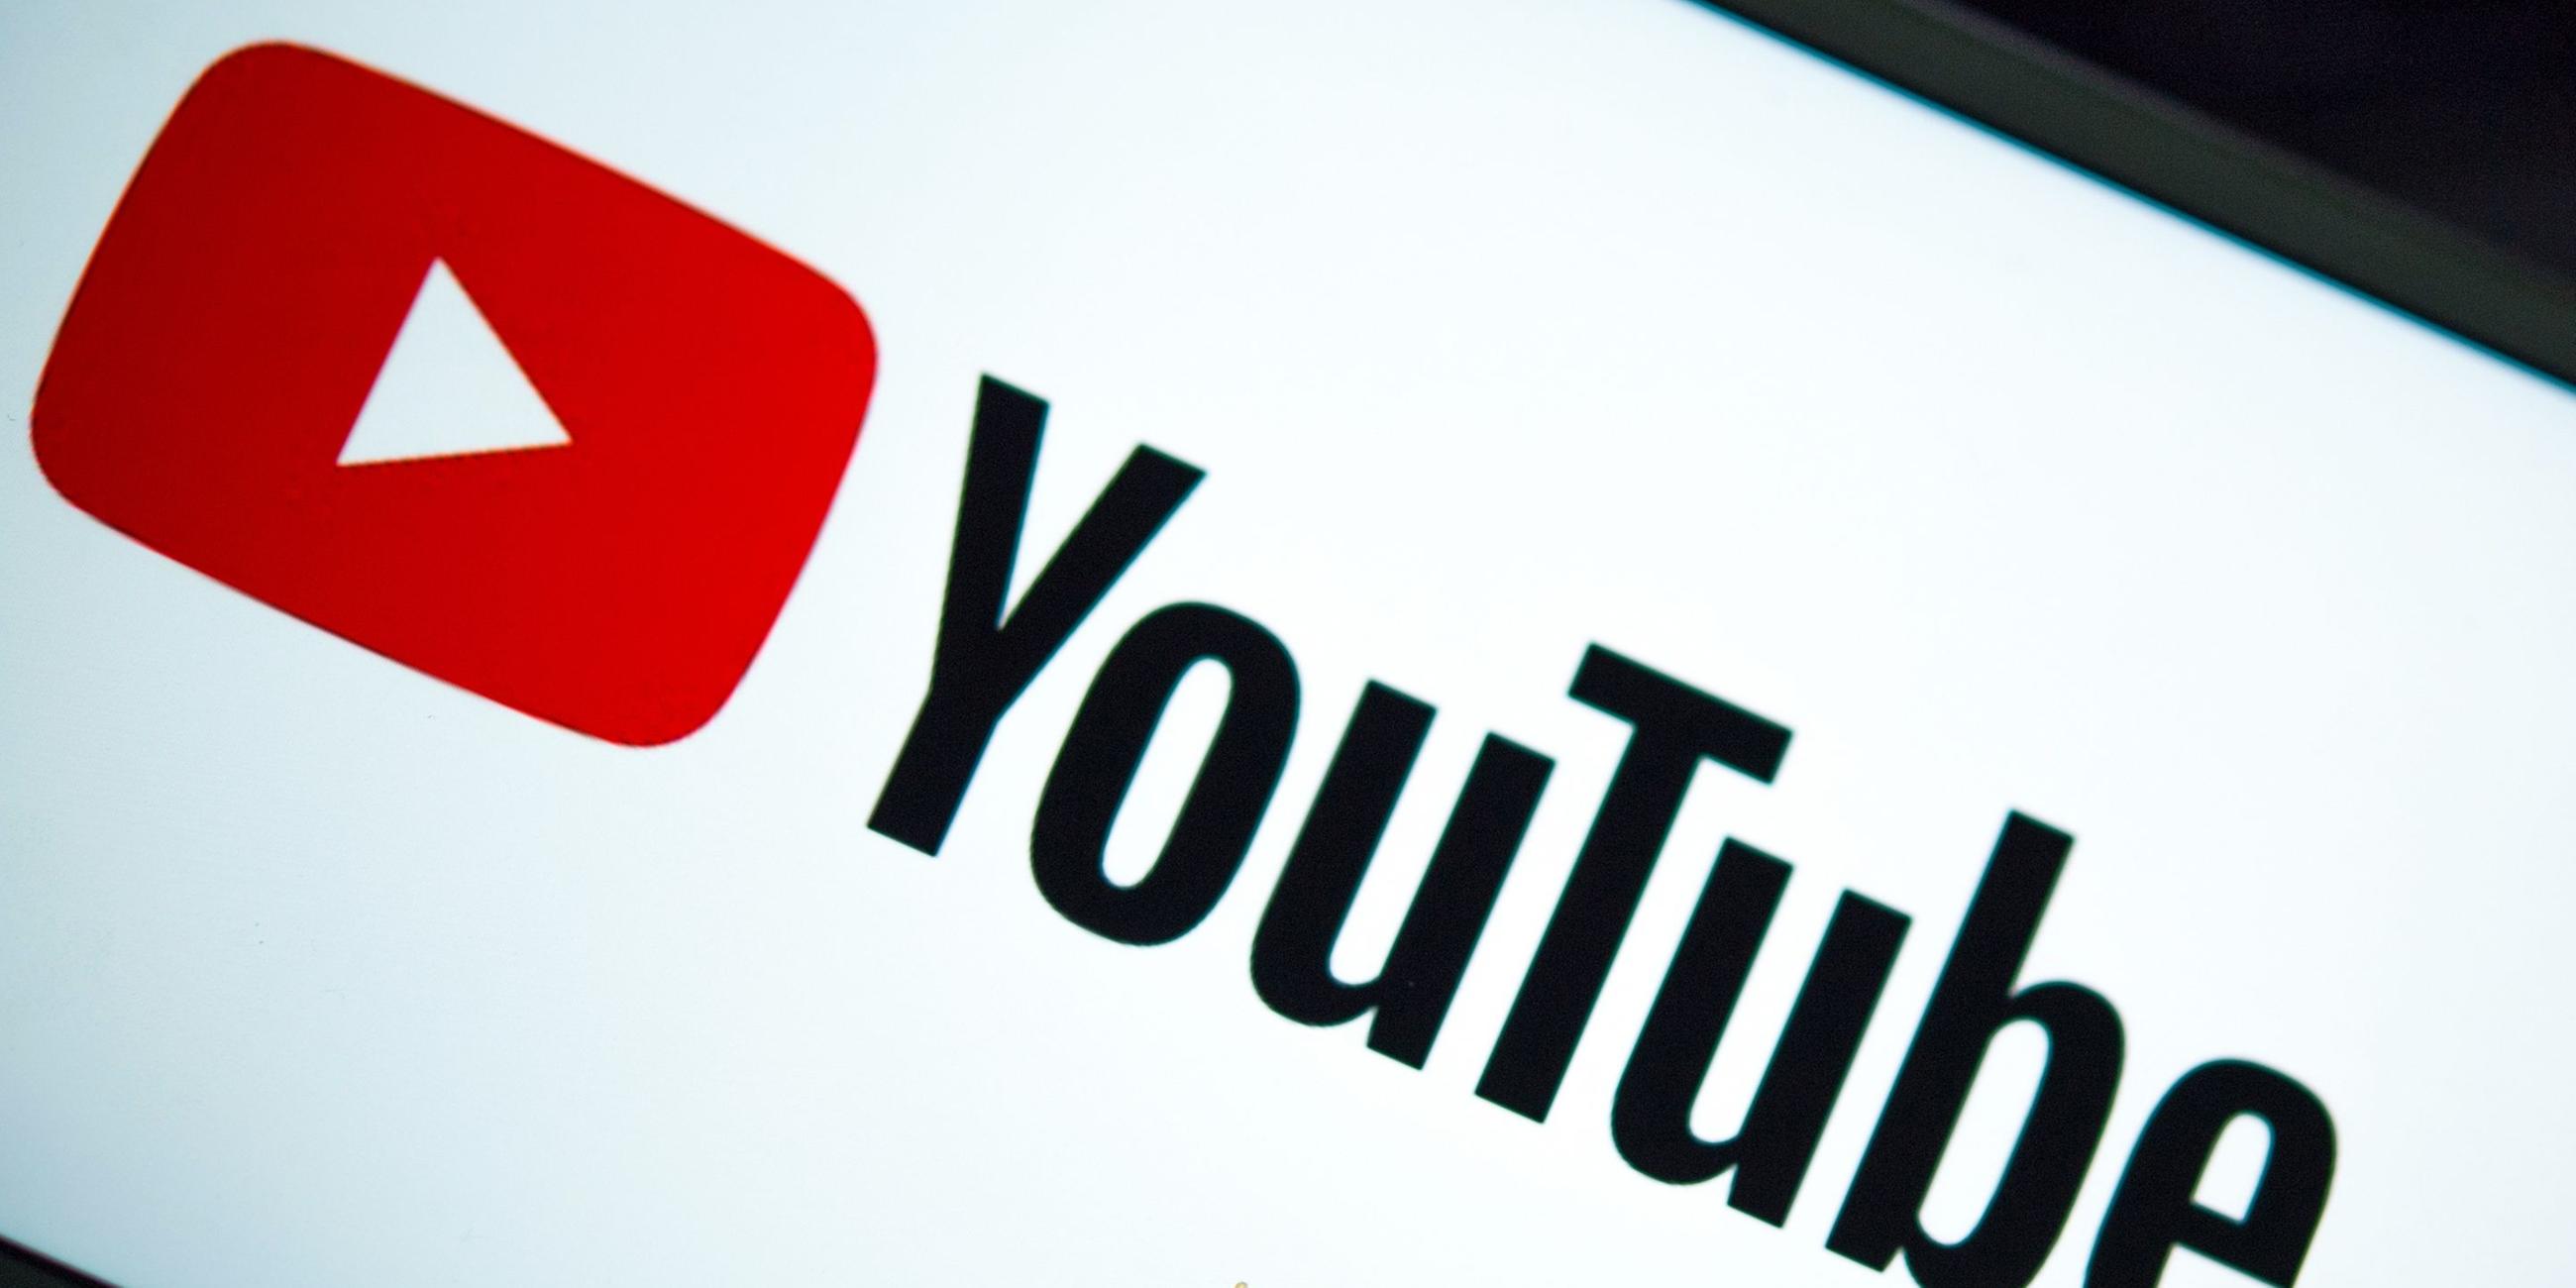 Das Logo der Internet-Videoplattform Youtube.